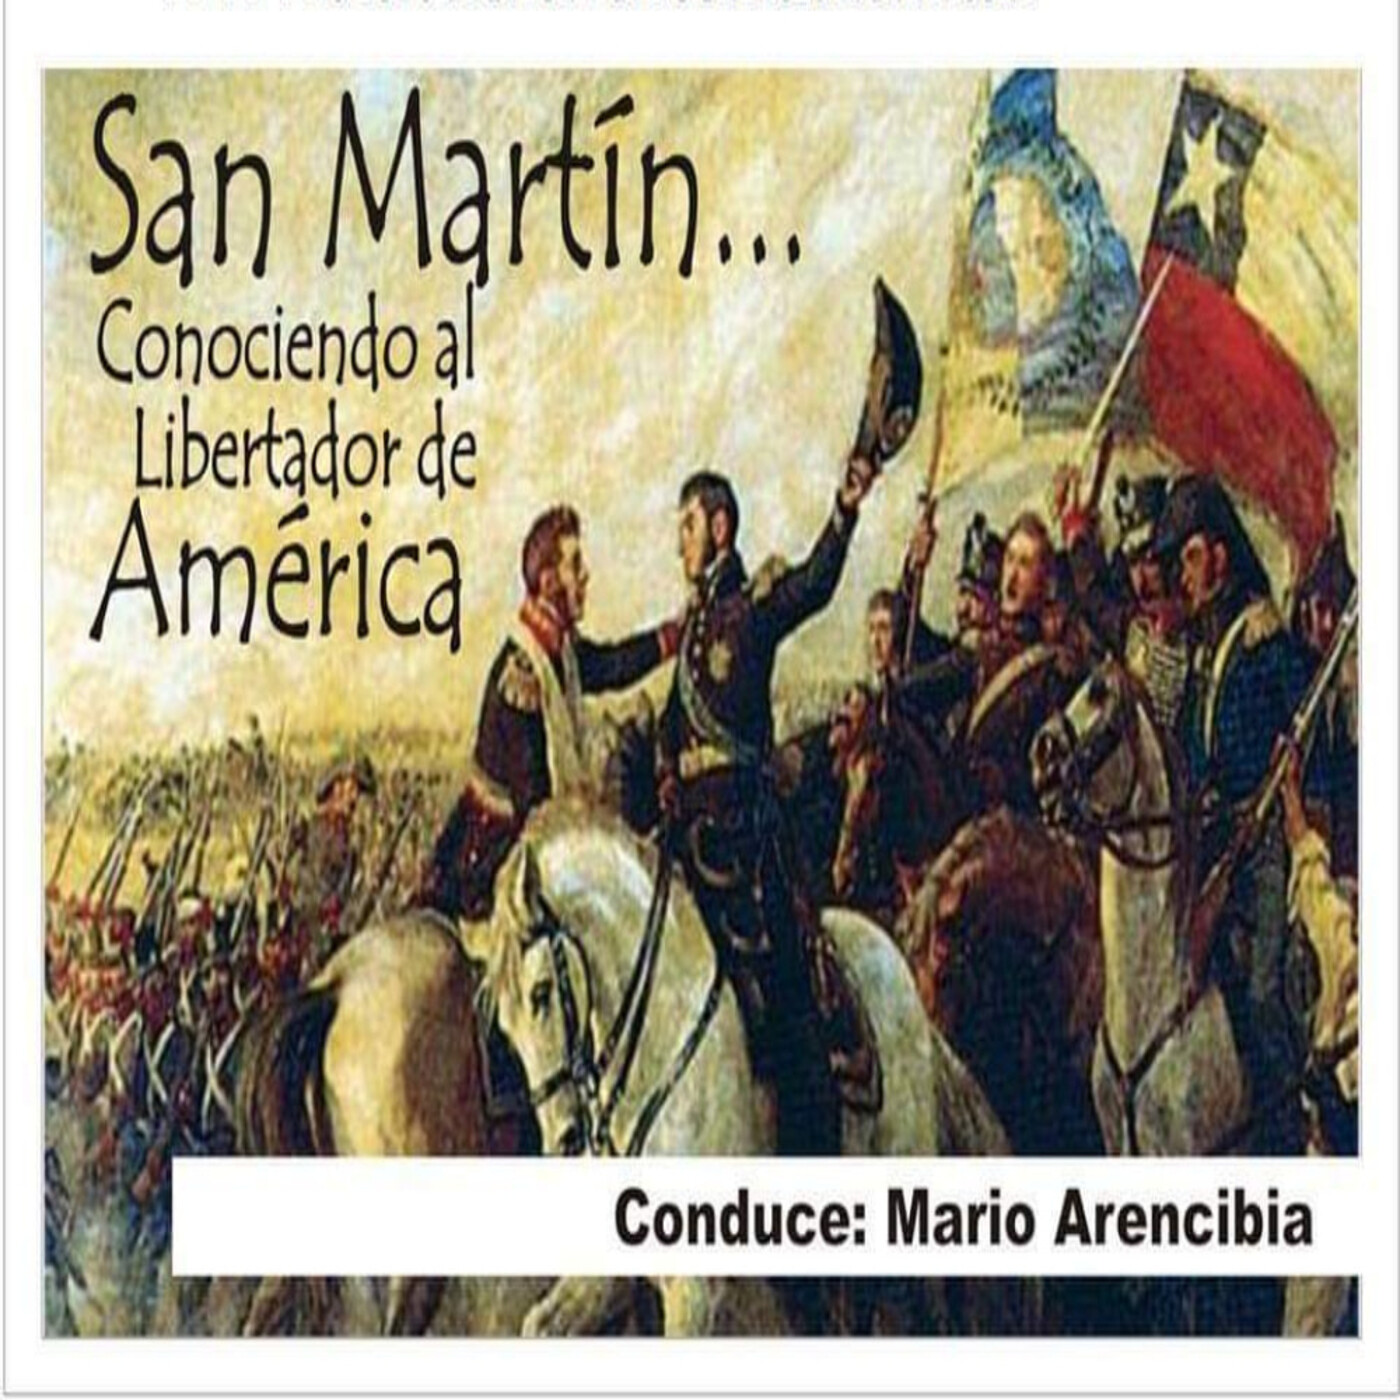 19/08/2023 San Martín (Conociendo al Libertador de America)